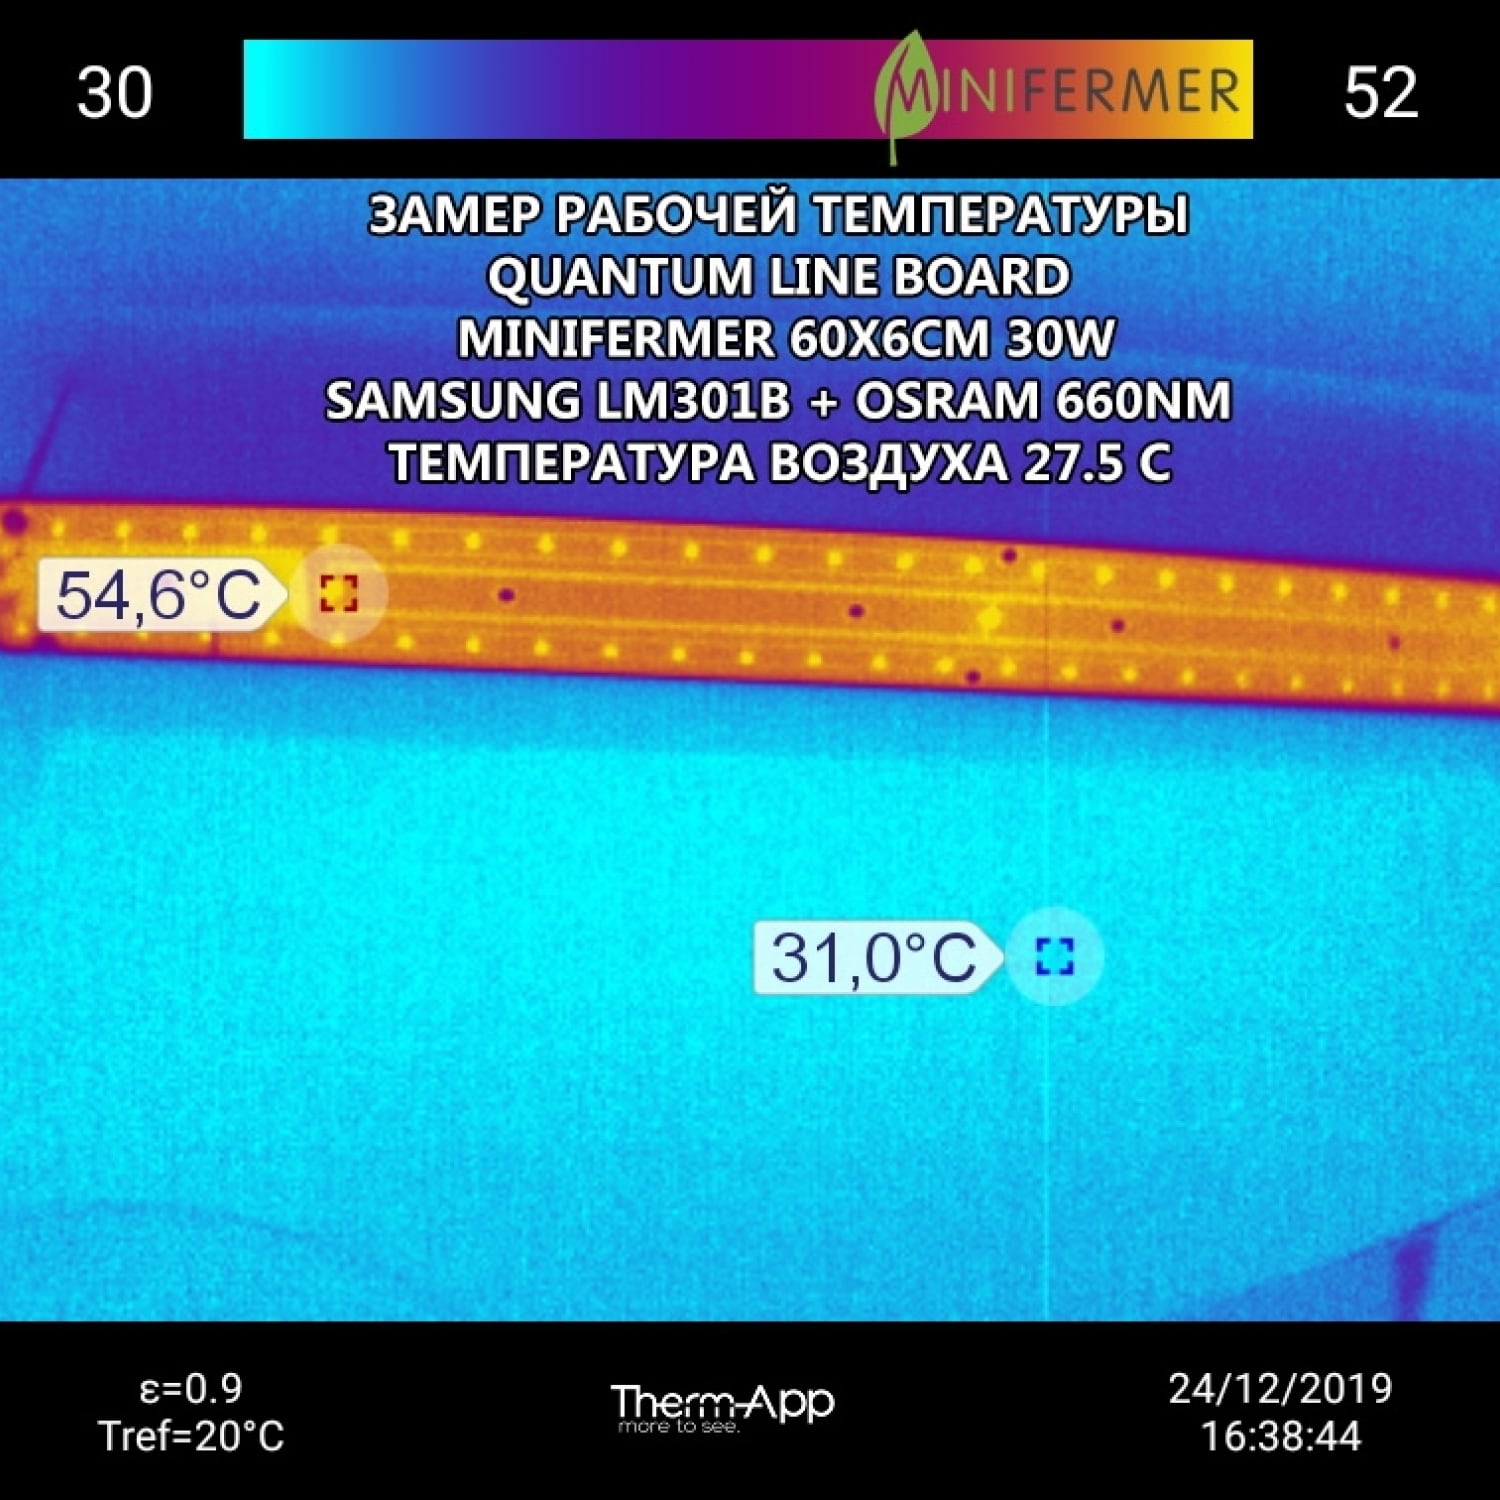 2.2.a Quantum line 600 мм Samsung 3000K + Osram 660nm